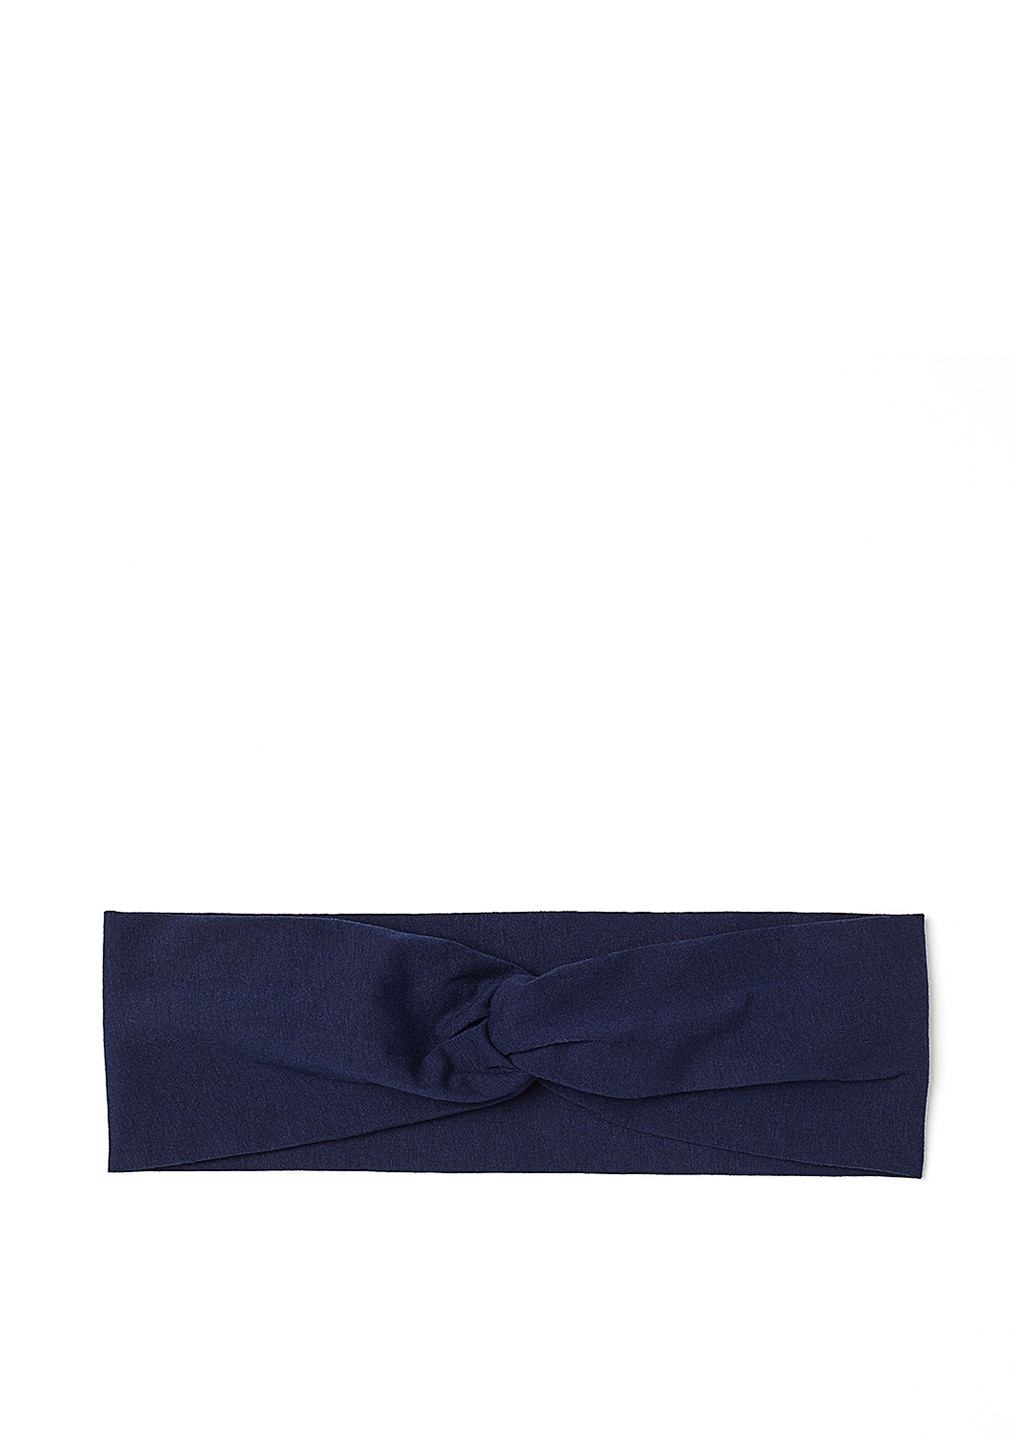 Повязка H&M однотонная тёмно-синяя хлопок, трикотаж